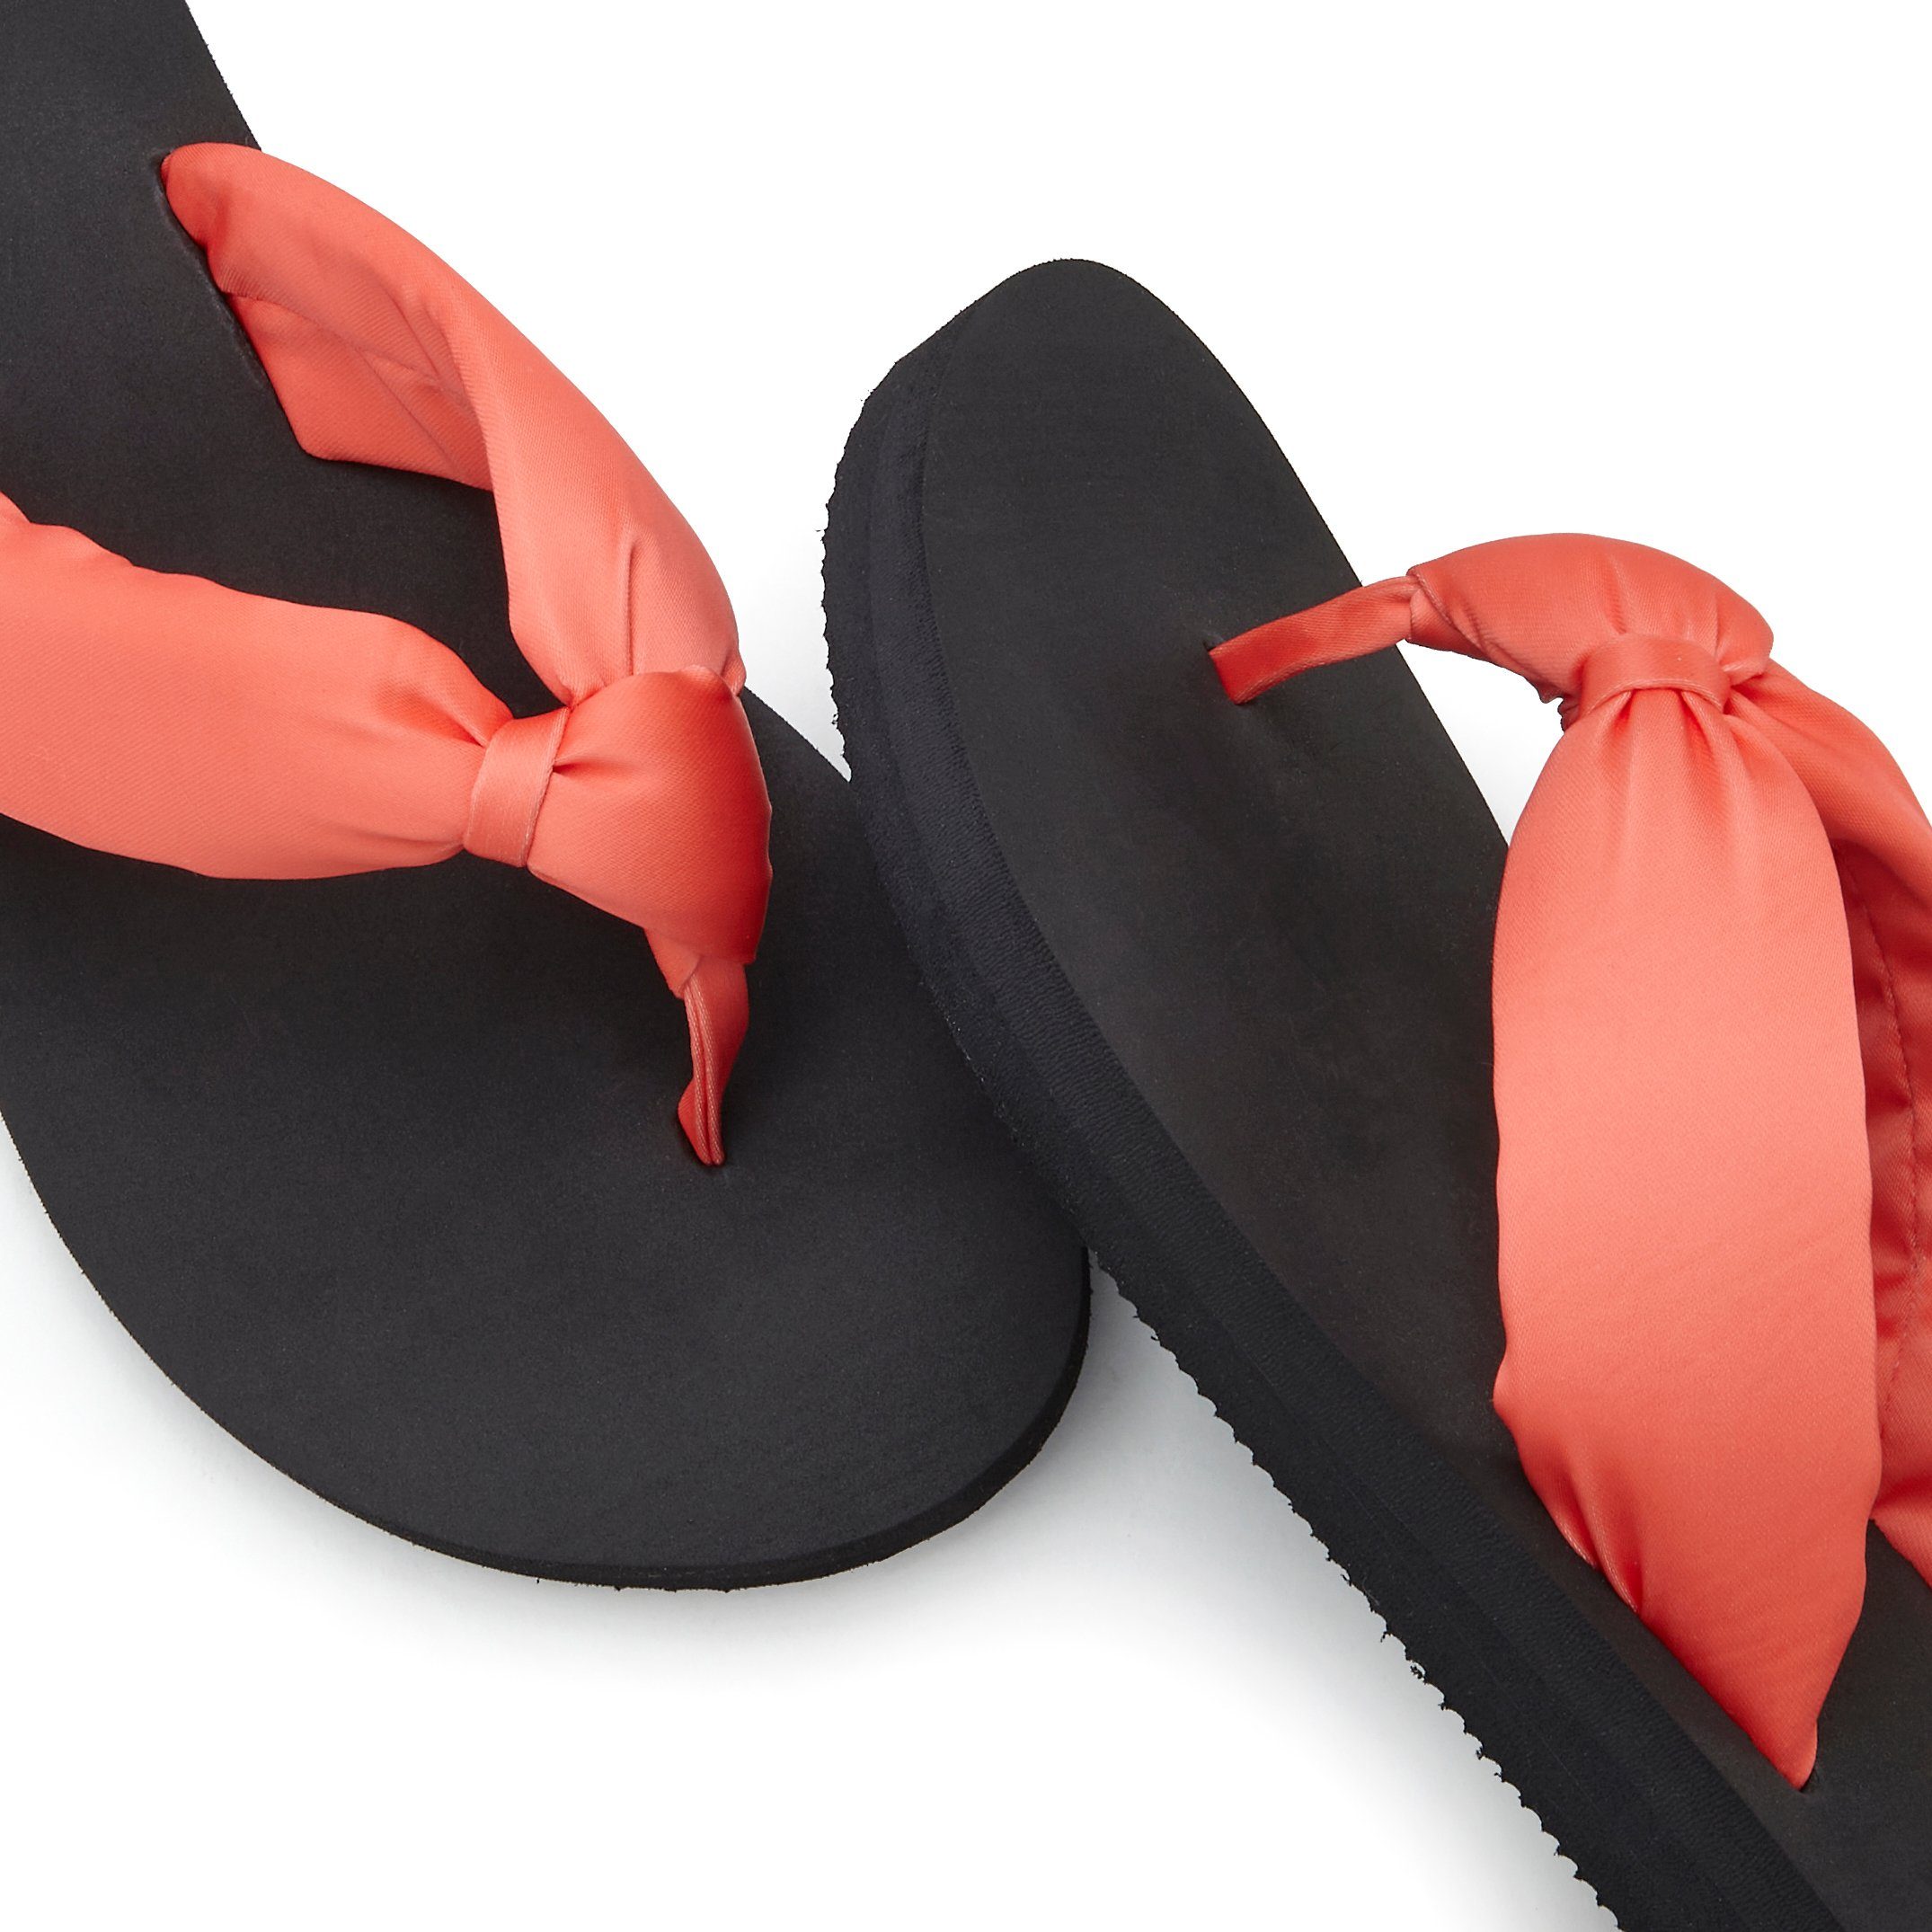 LASCANA Badezehentrenner Sandale, VEGAN Band mit Badeschuh orange-schwarz Pantolette, softem ultraleicht